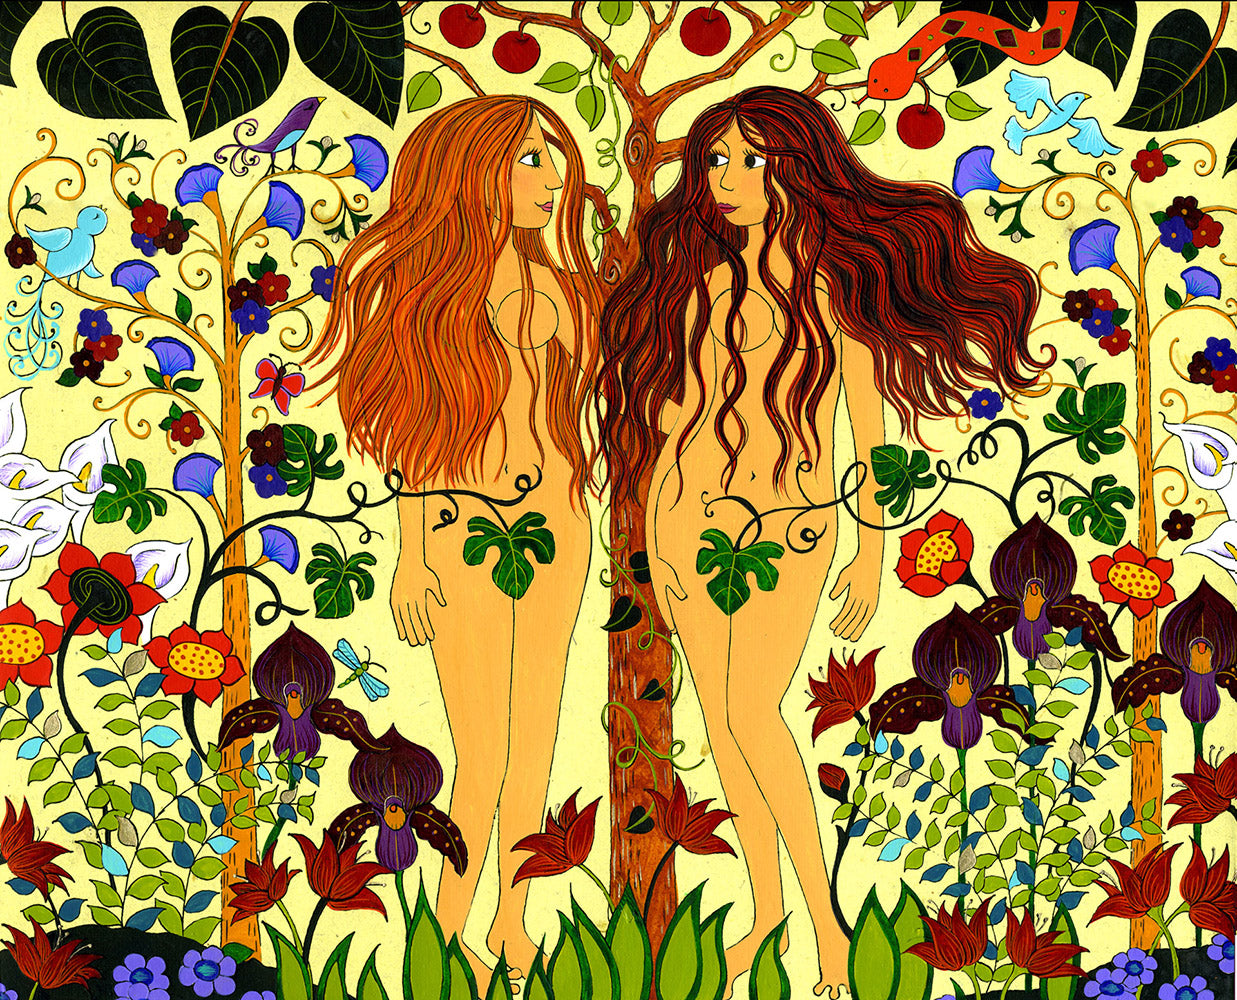 Адам ева и Лилит картина